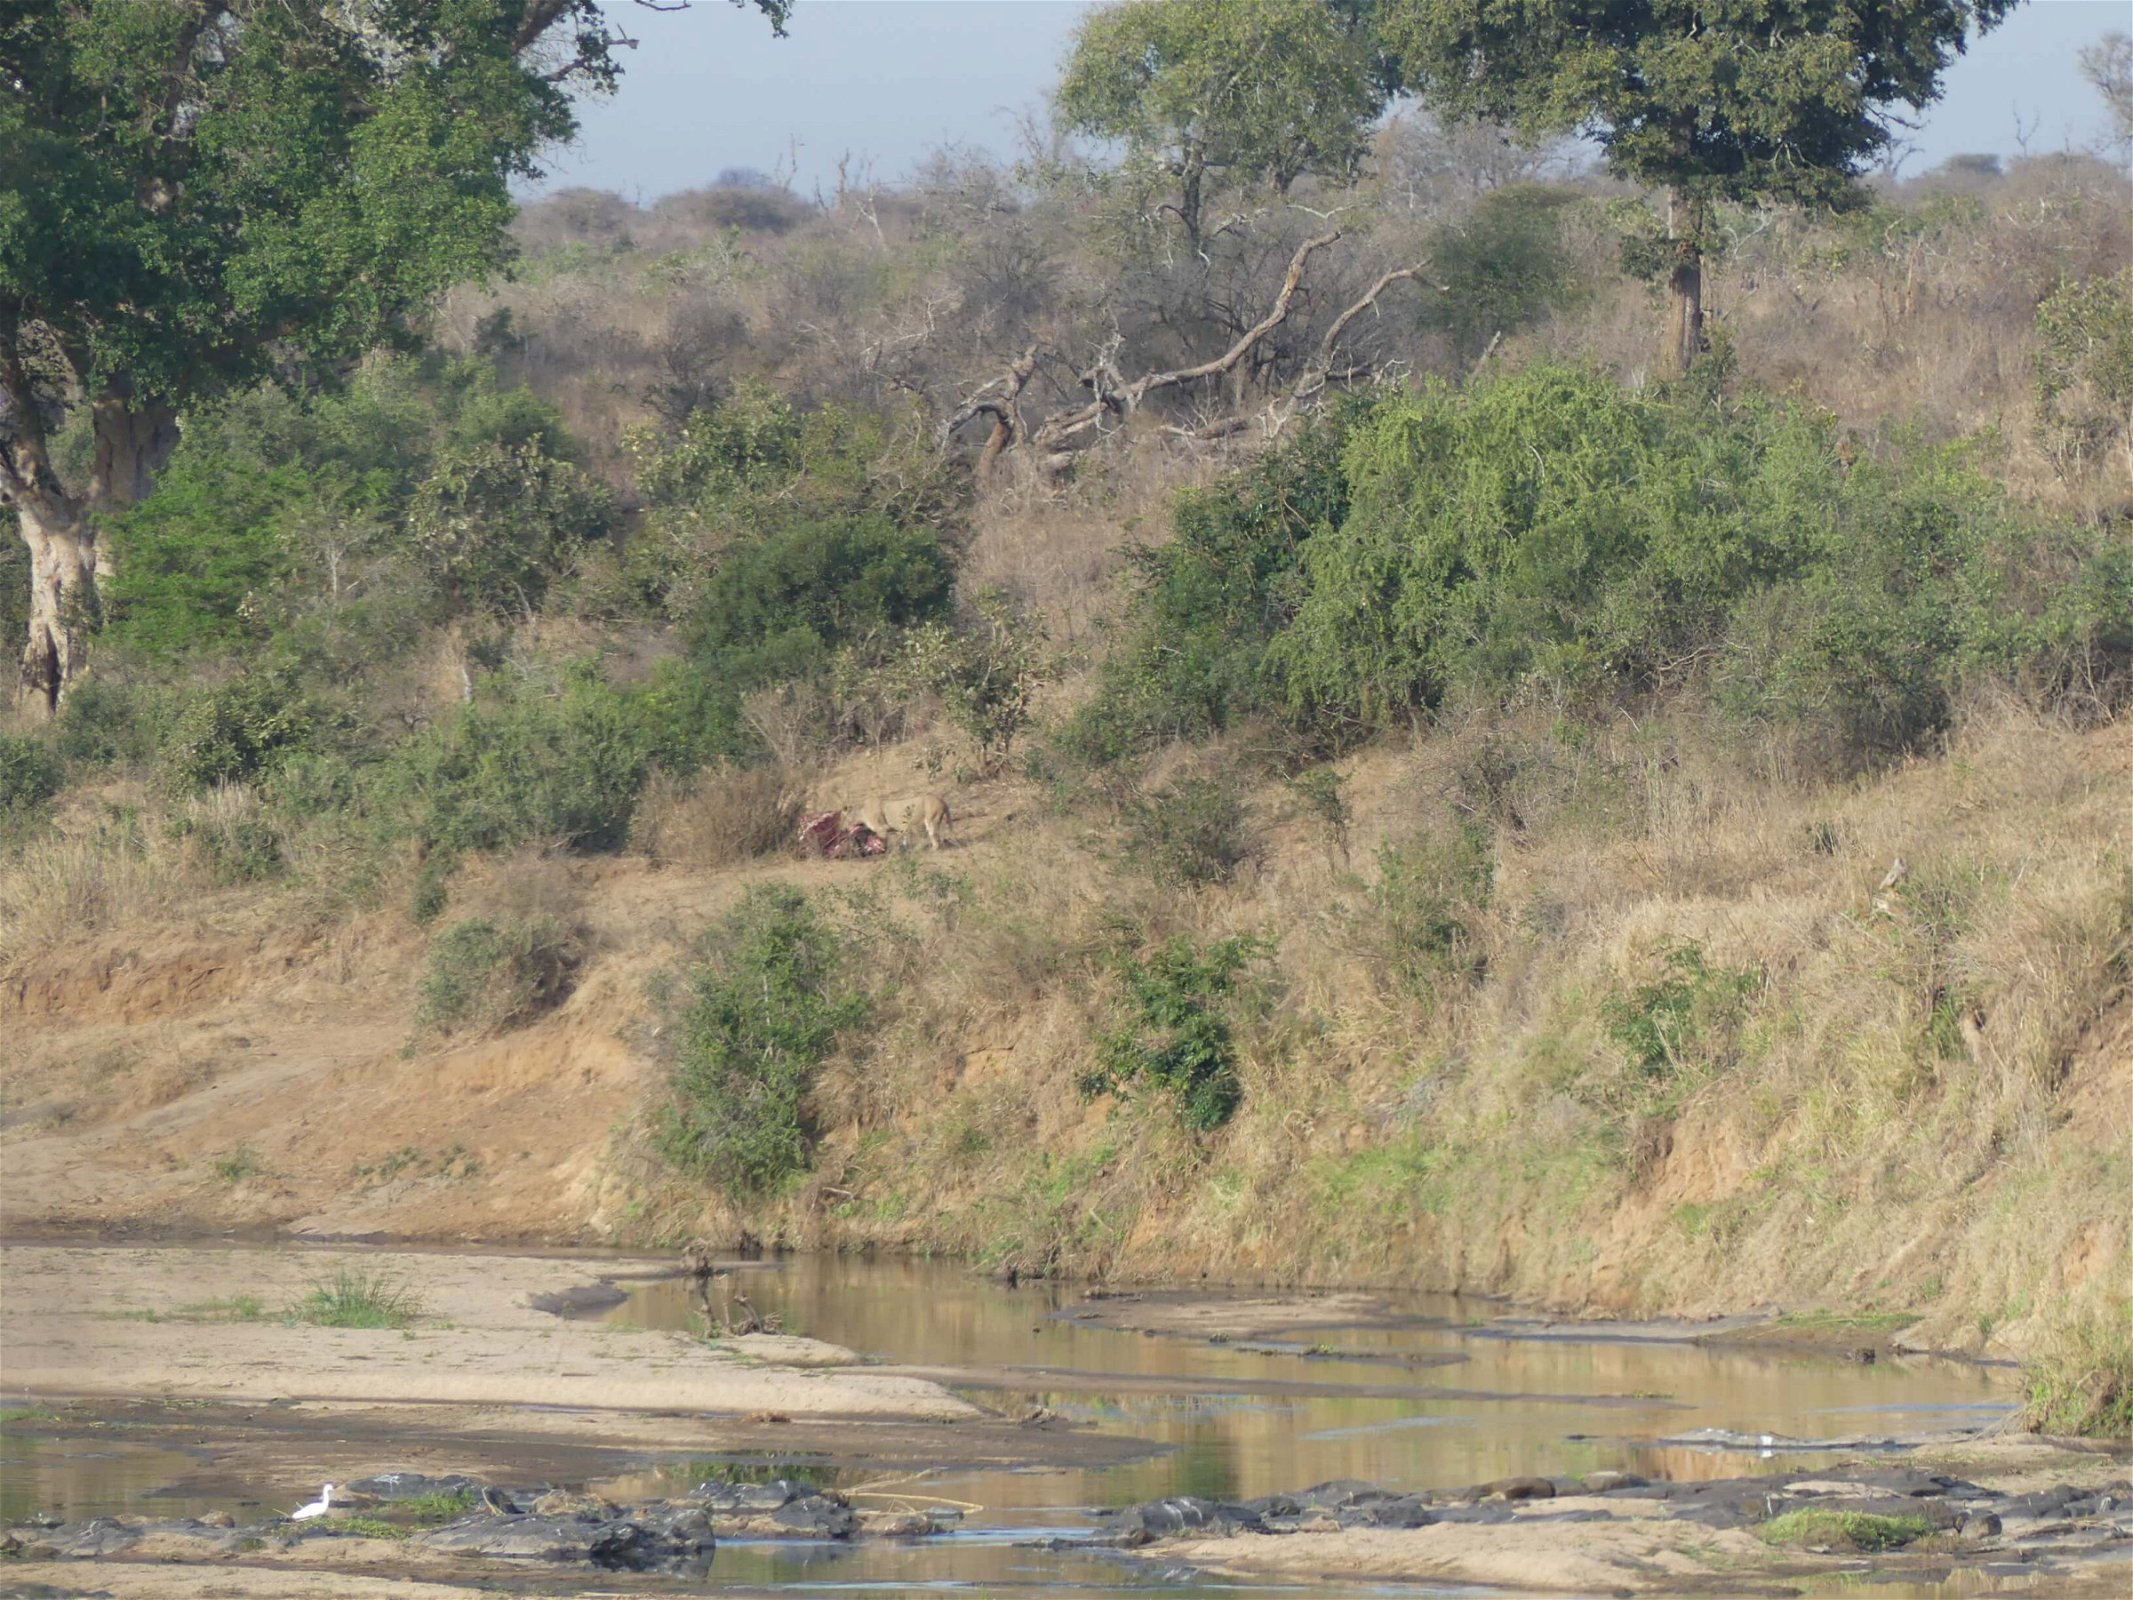 zuid-afrika-wandelsafari-in-het-krugerpark-leeuw-jagen